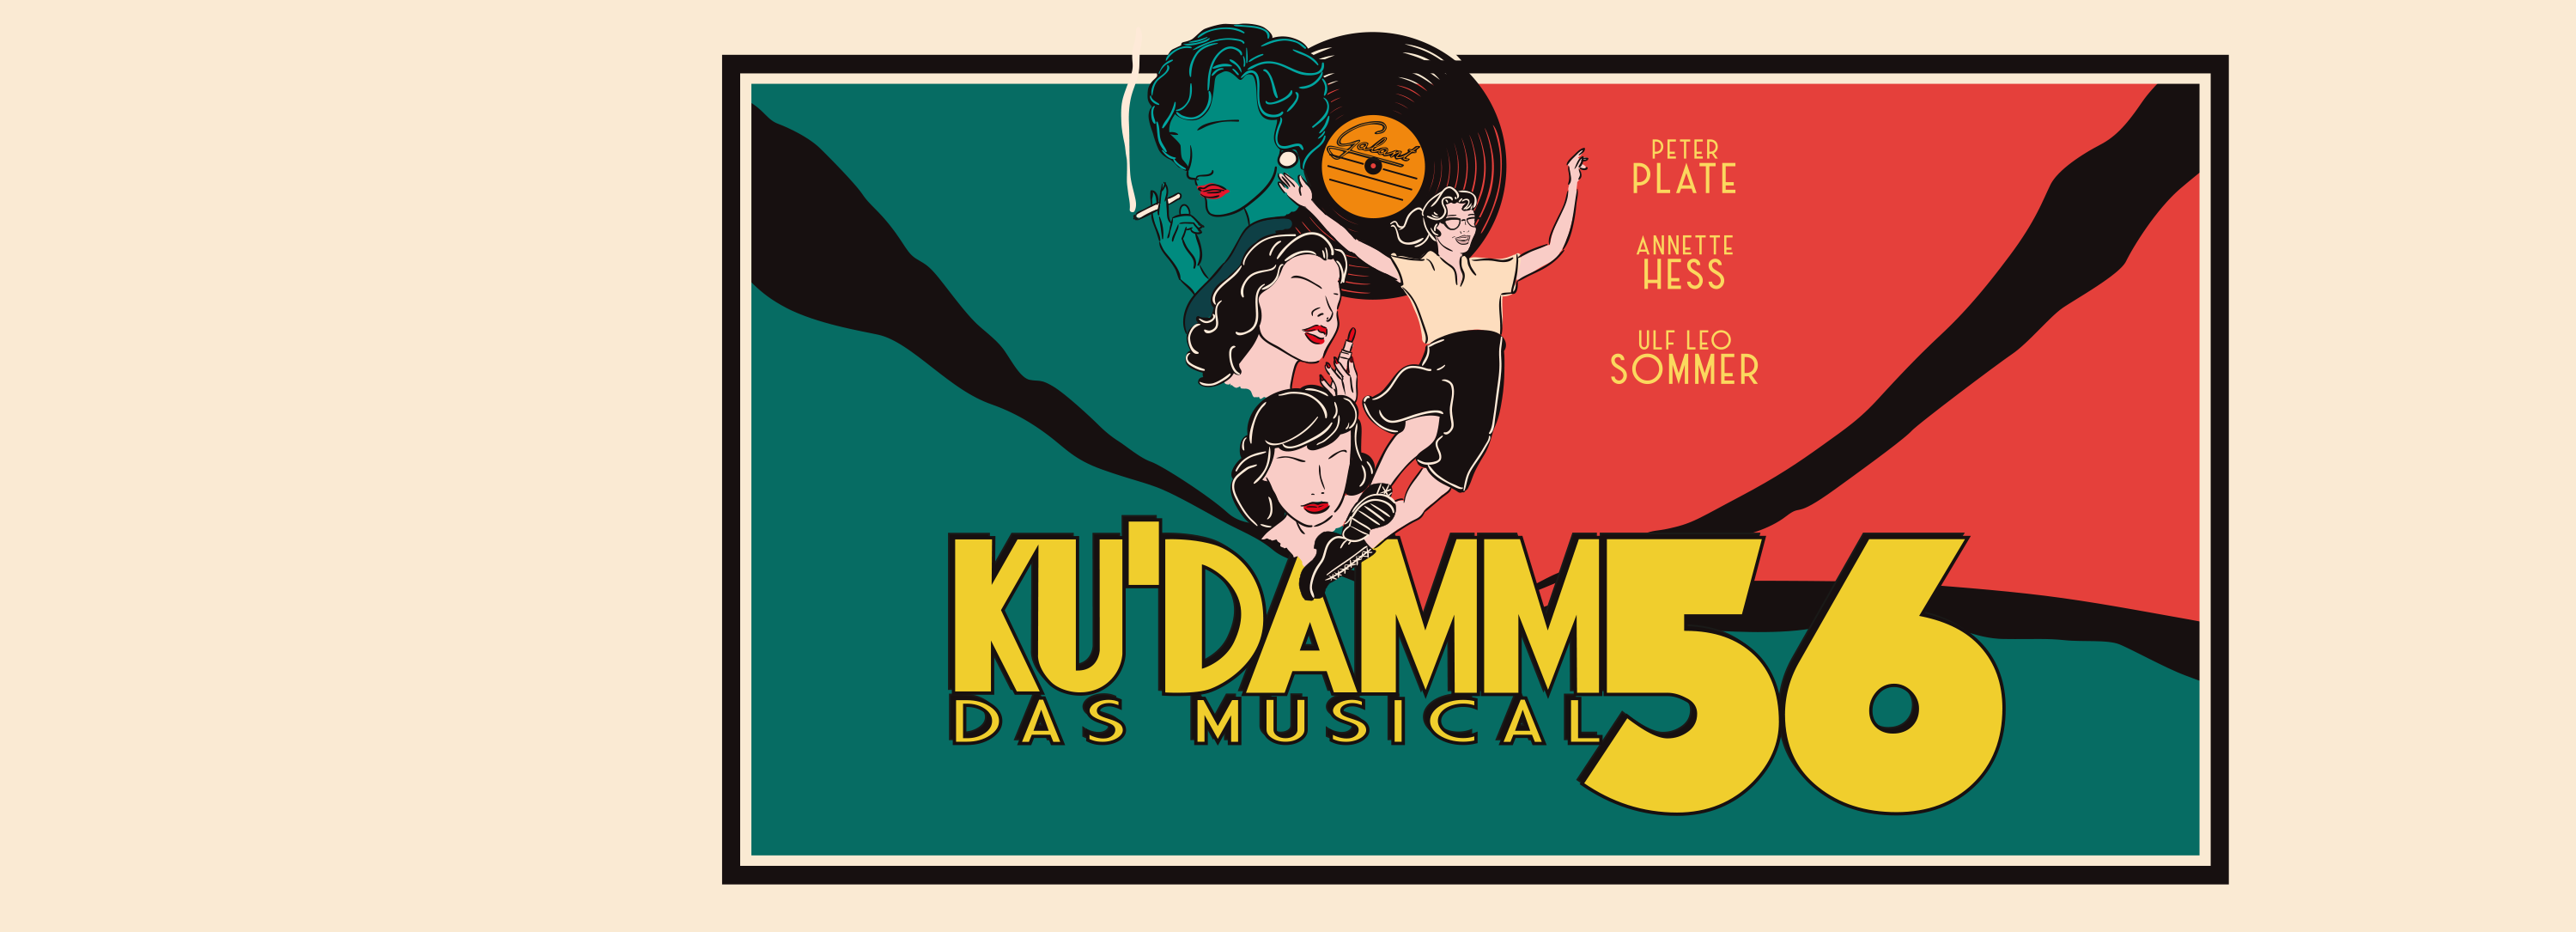 Ku'damm 56 – Das Musical im Deutschen Theater München